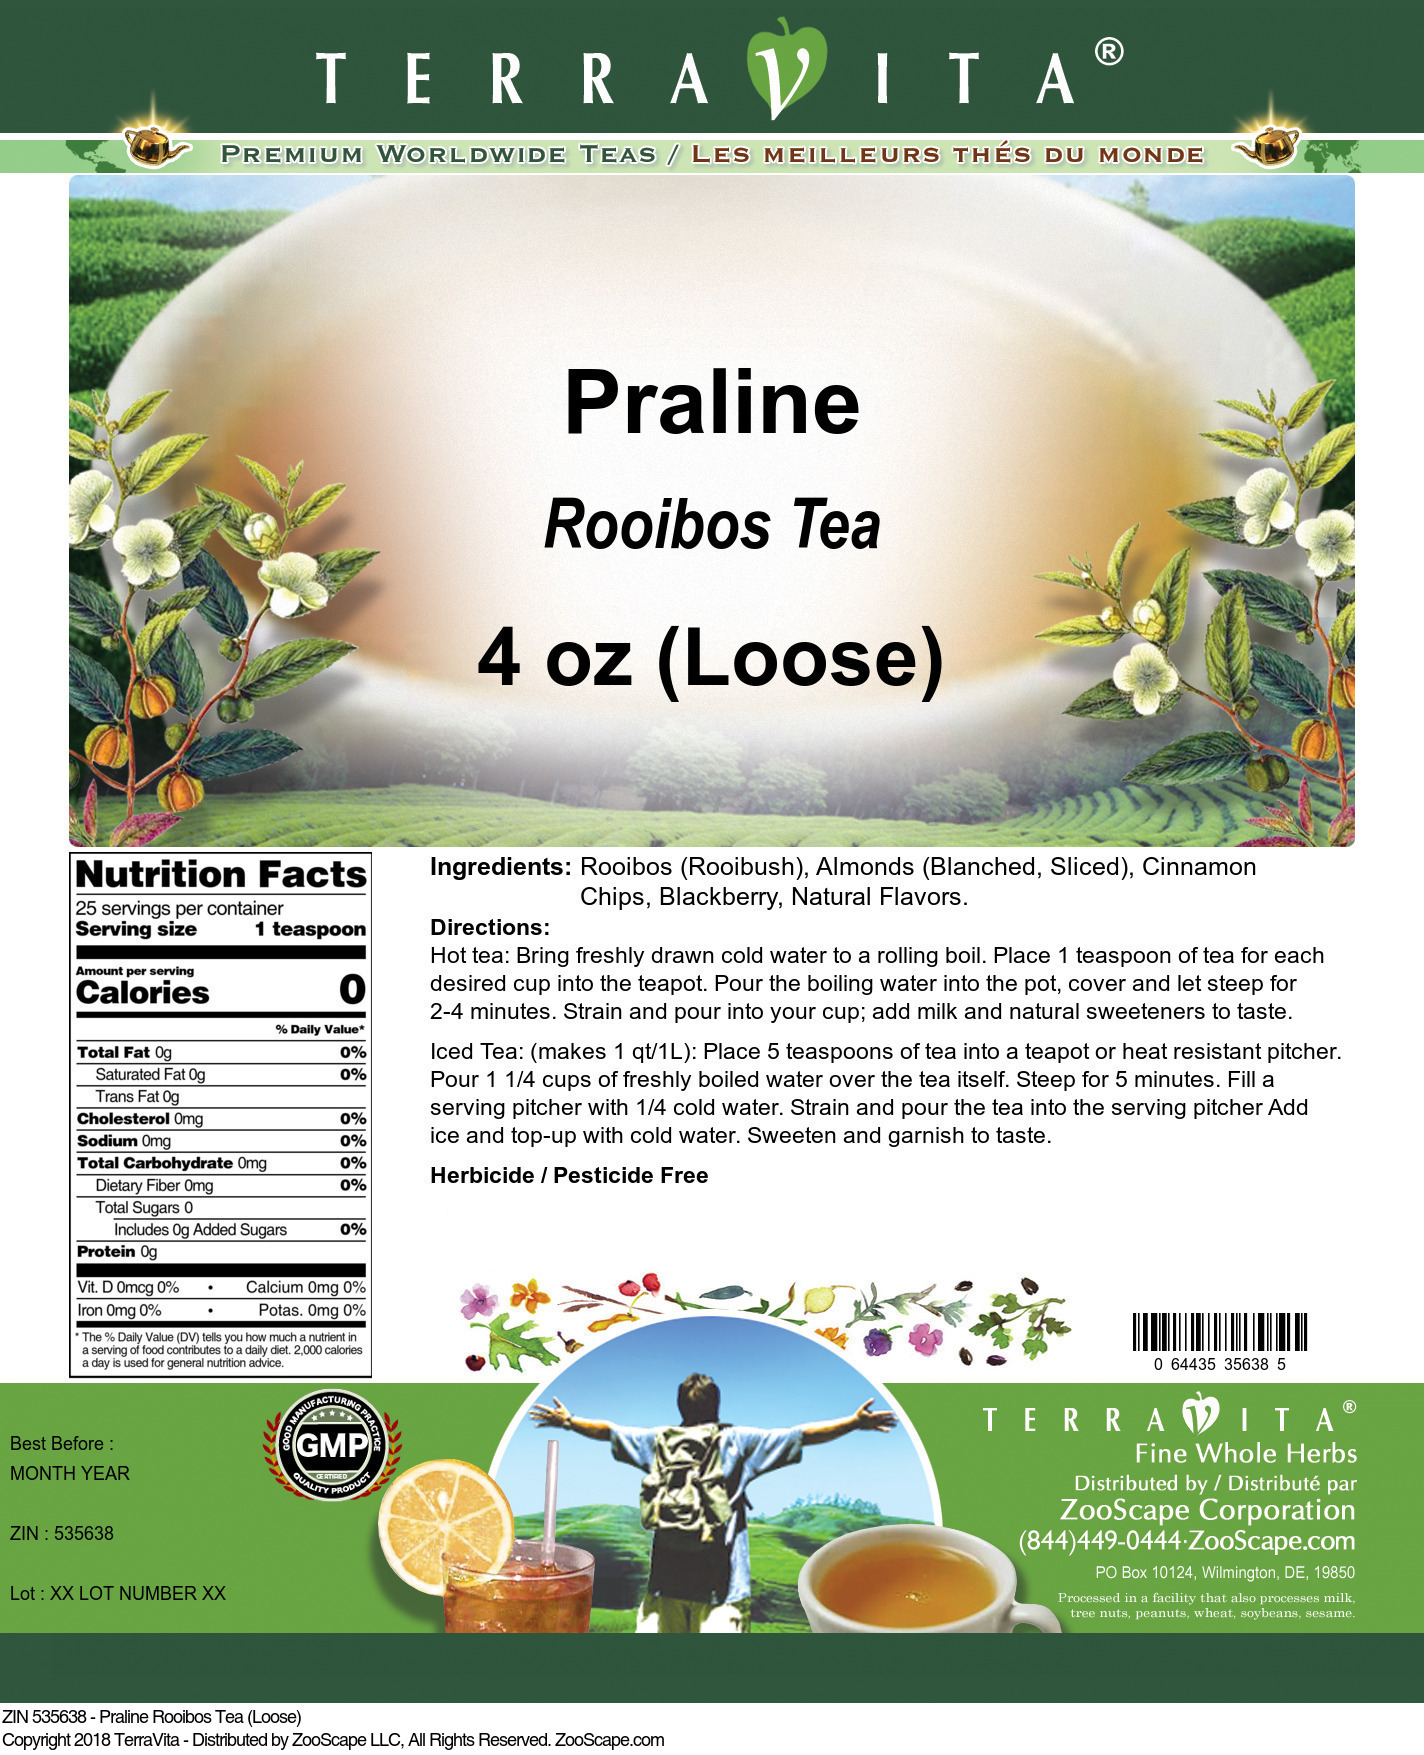 Praline Rooibos Tea (Loose) - Label